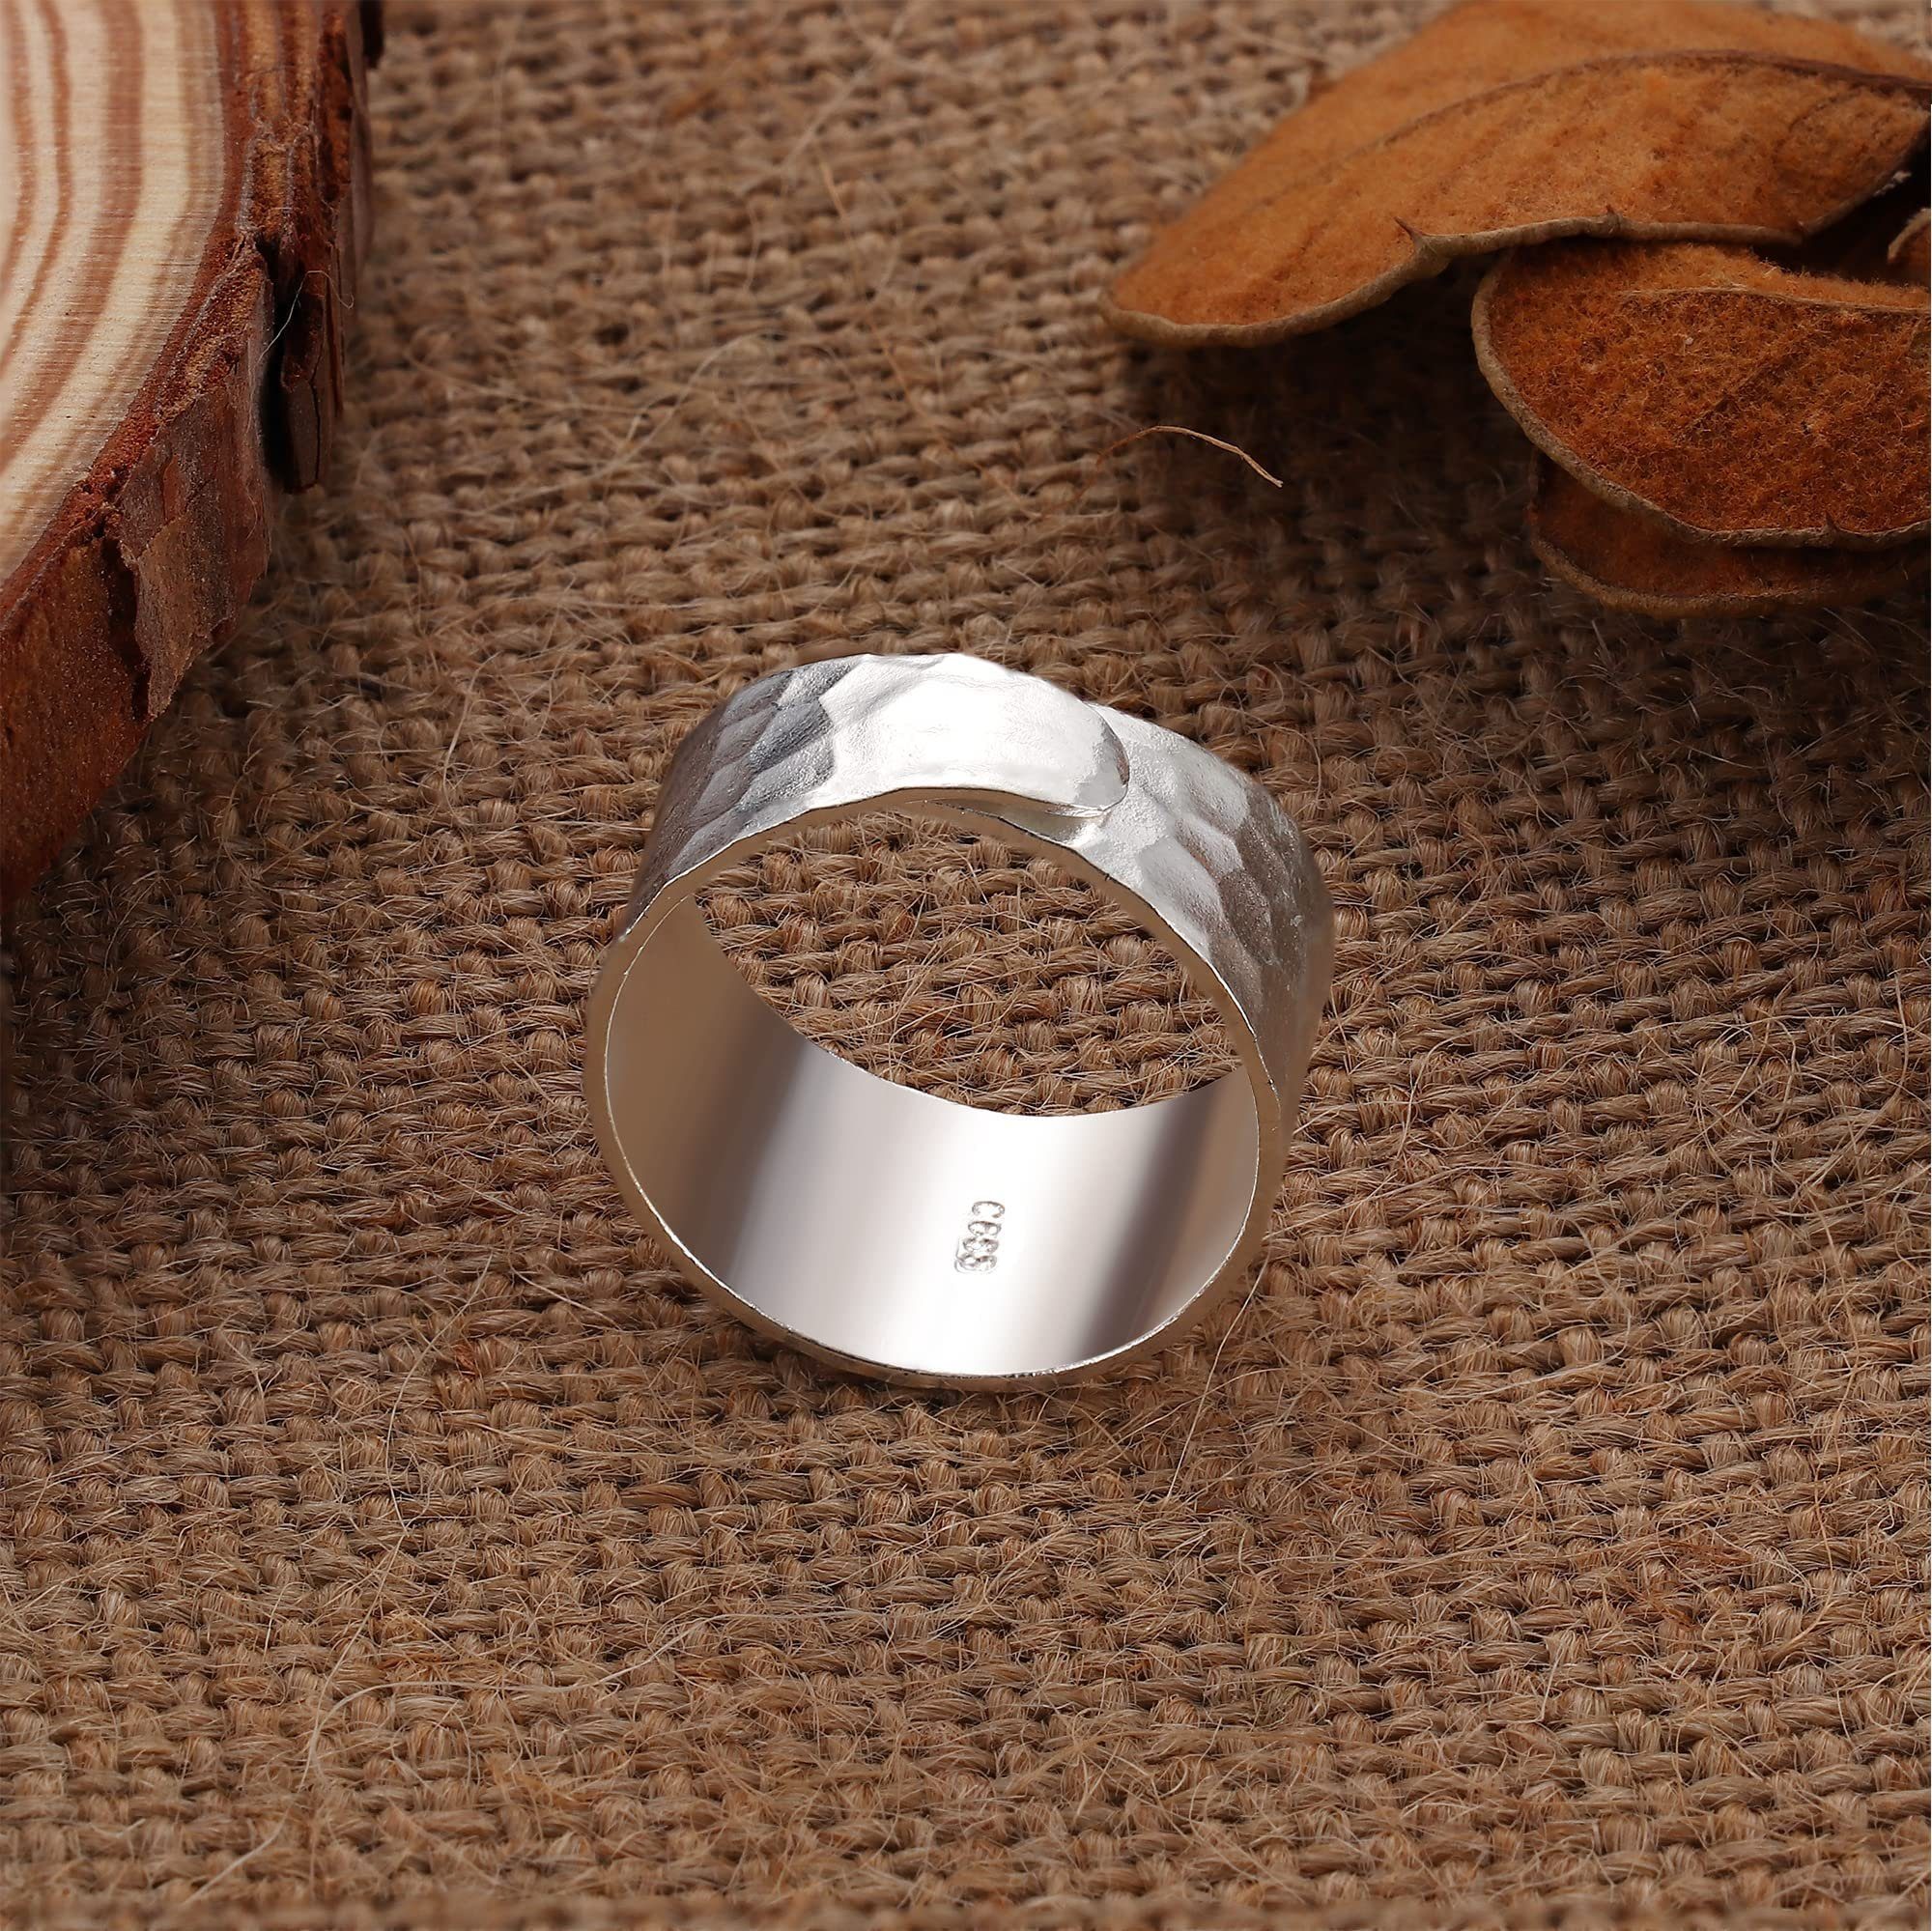 POCHUMIDUU Fingerring 925 Sterling Silber für 925er Frauen, für Sterlingsilber Frauen Ring Silberschmuck Handgefertigter aus breiter